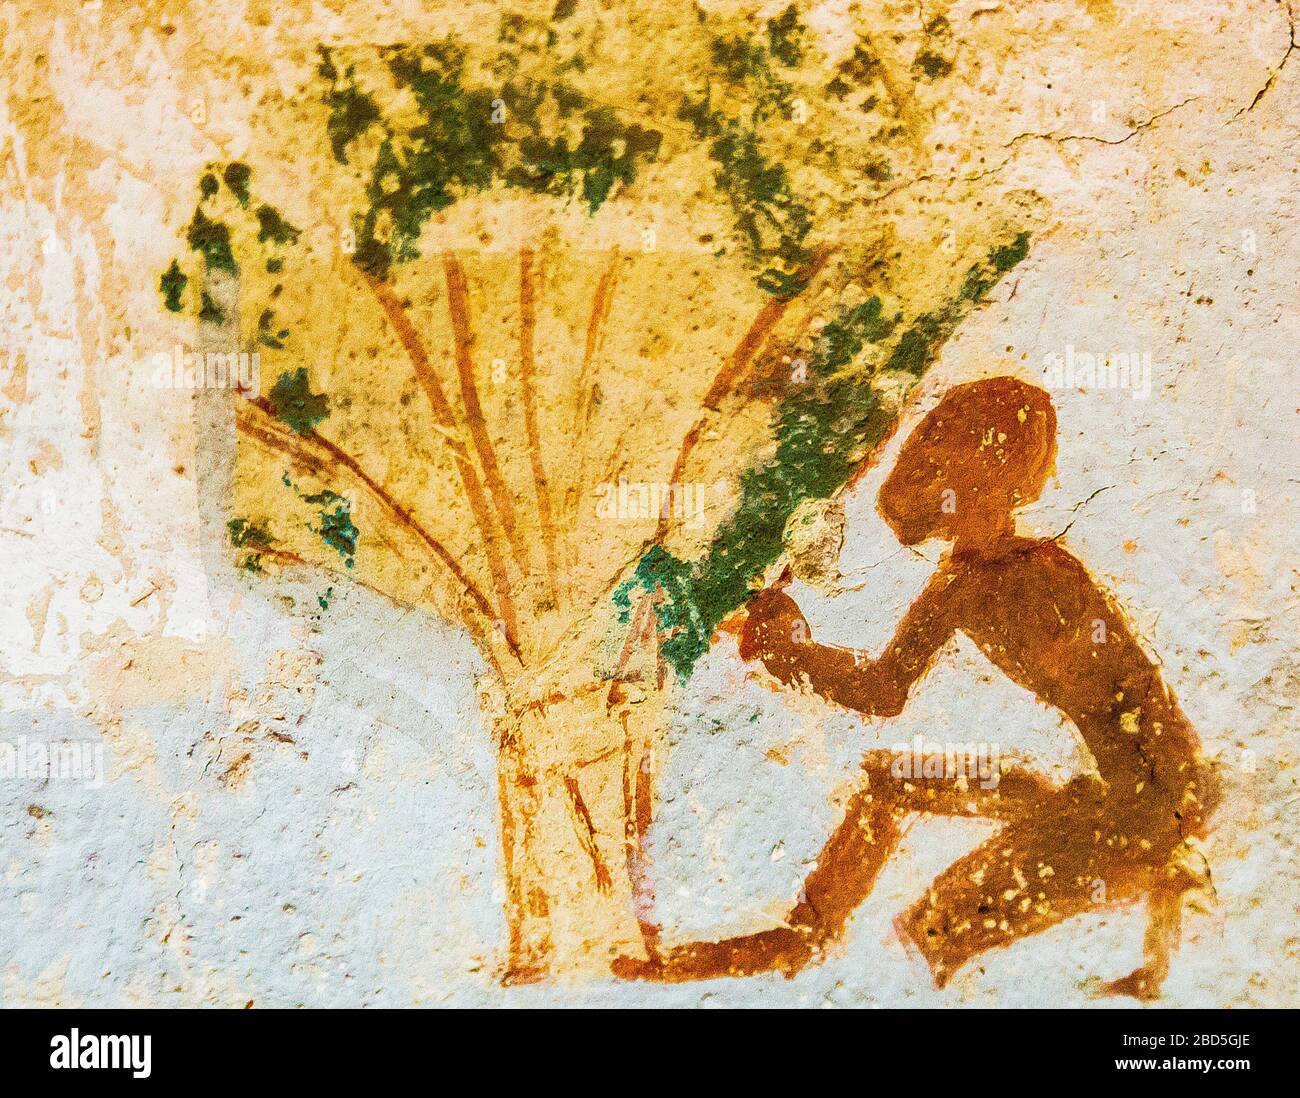 Patrimonio de la Humanidad de la UNESCO, Tebas en Egipto, Valle de los nobles (Dra Abu el Naga), tumba de Roy. Un niño cerca de un árbol o un fagot. Foto de stock